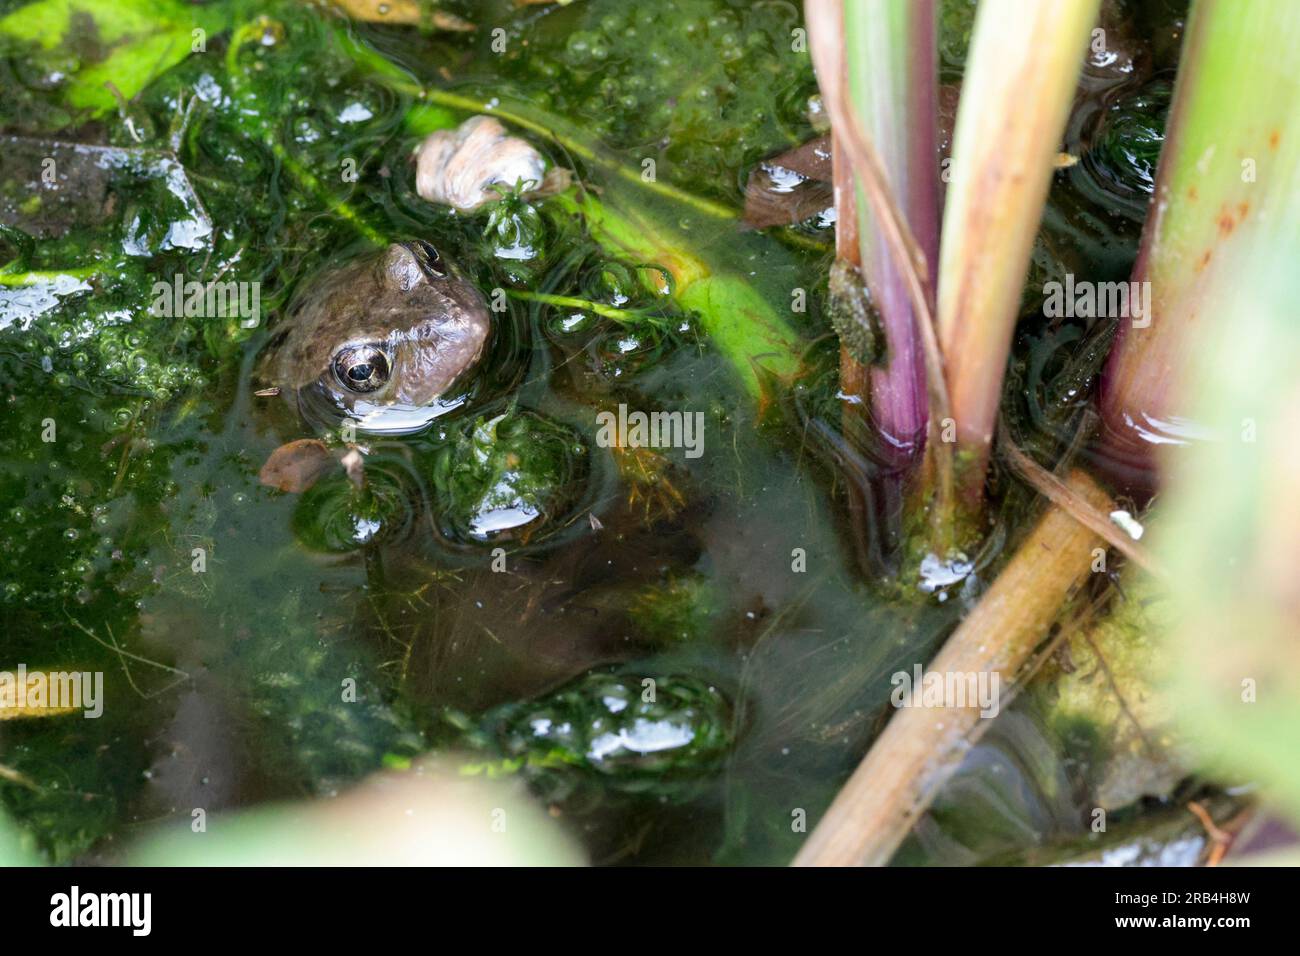 Rana comune Rana temporaria, in un piccolo laghetto da giardino che lancia la testa fuori dall'erbaccia d'acqua con uno strato di superficie trasparente scivola sul viso, gli occhi spalancati Foto Stock